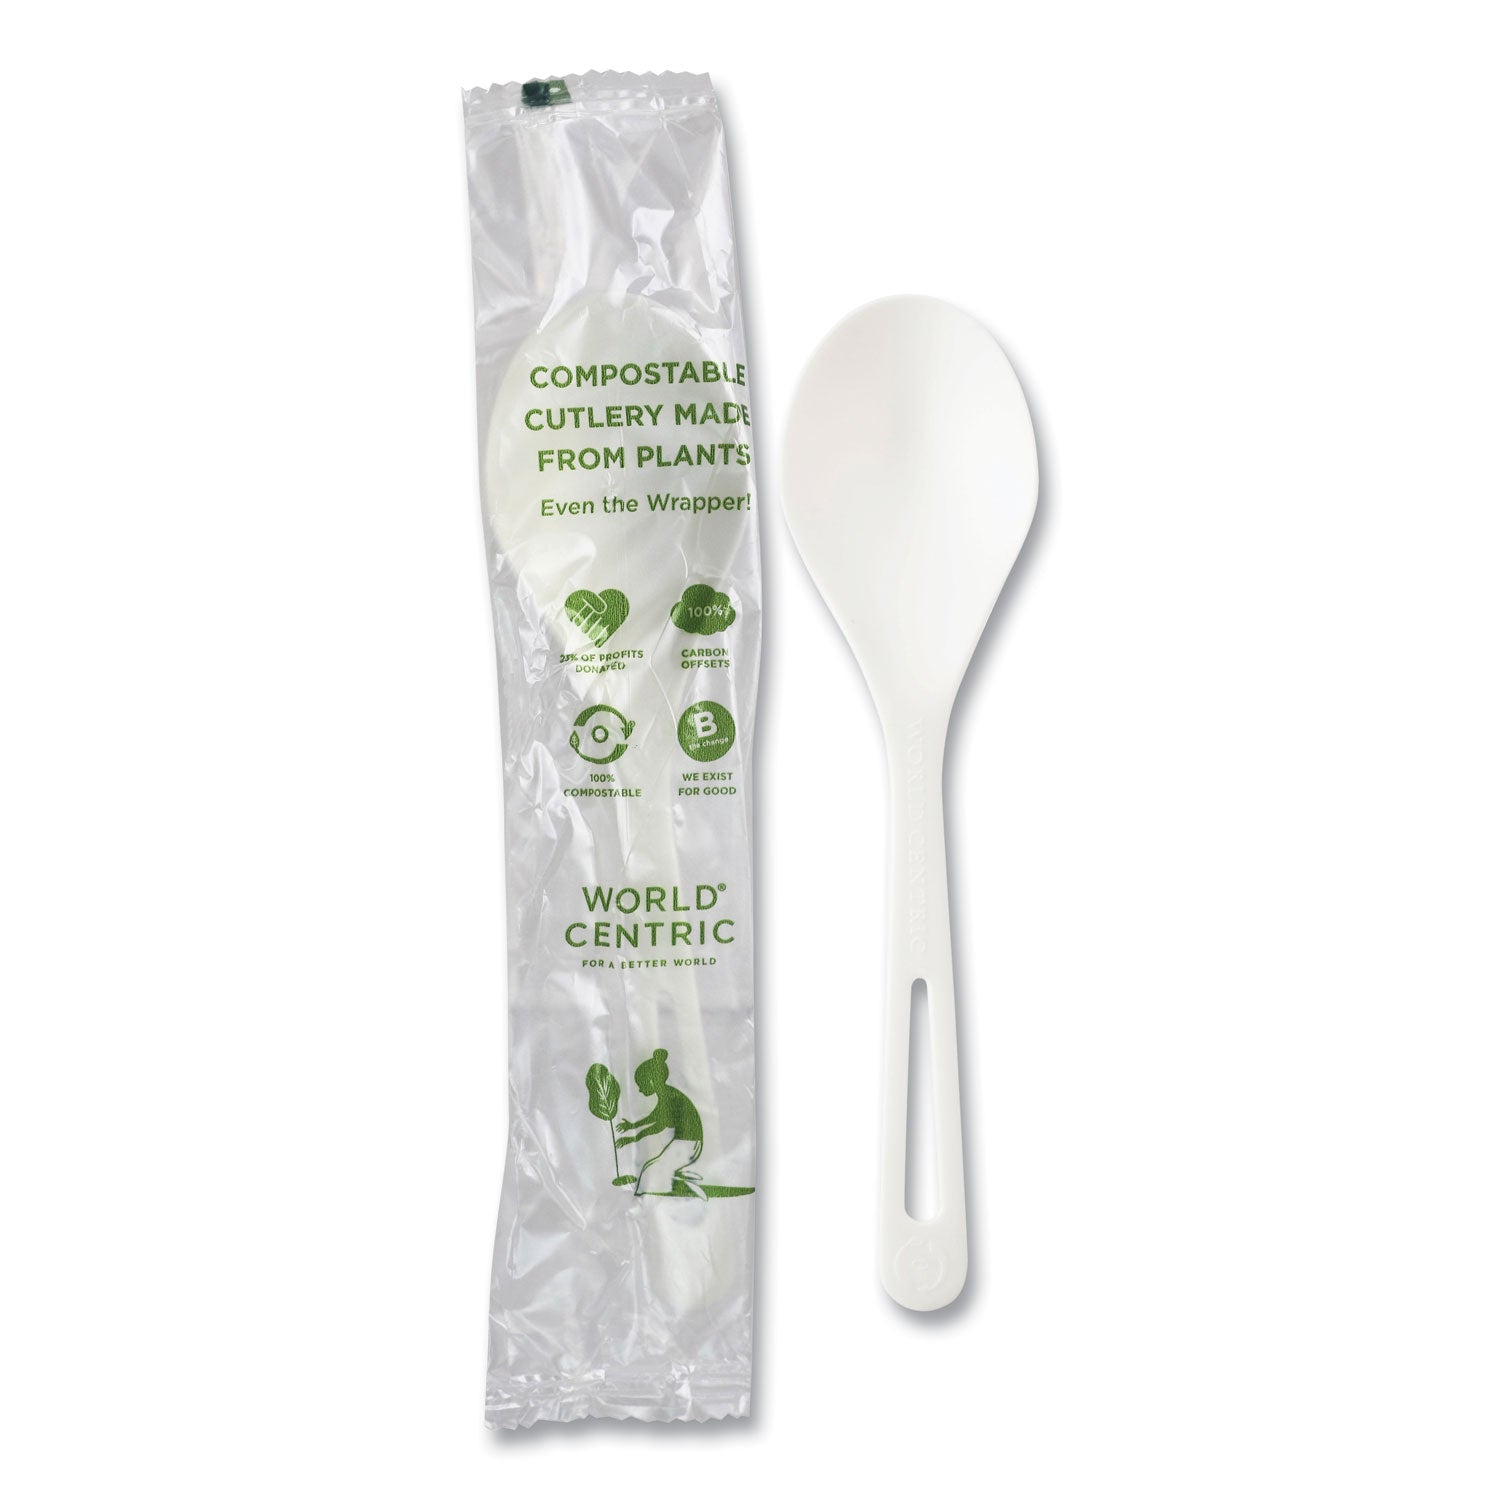 TPLA Compostable Cutlery, Soup Spoon, White, 750/Carton - 1